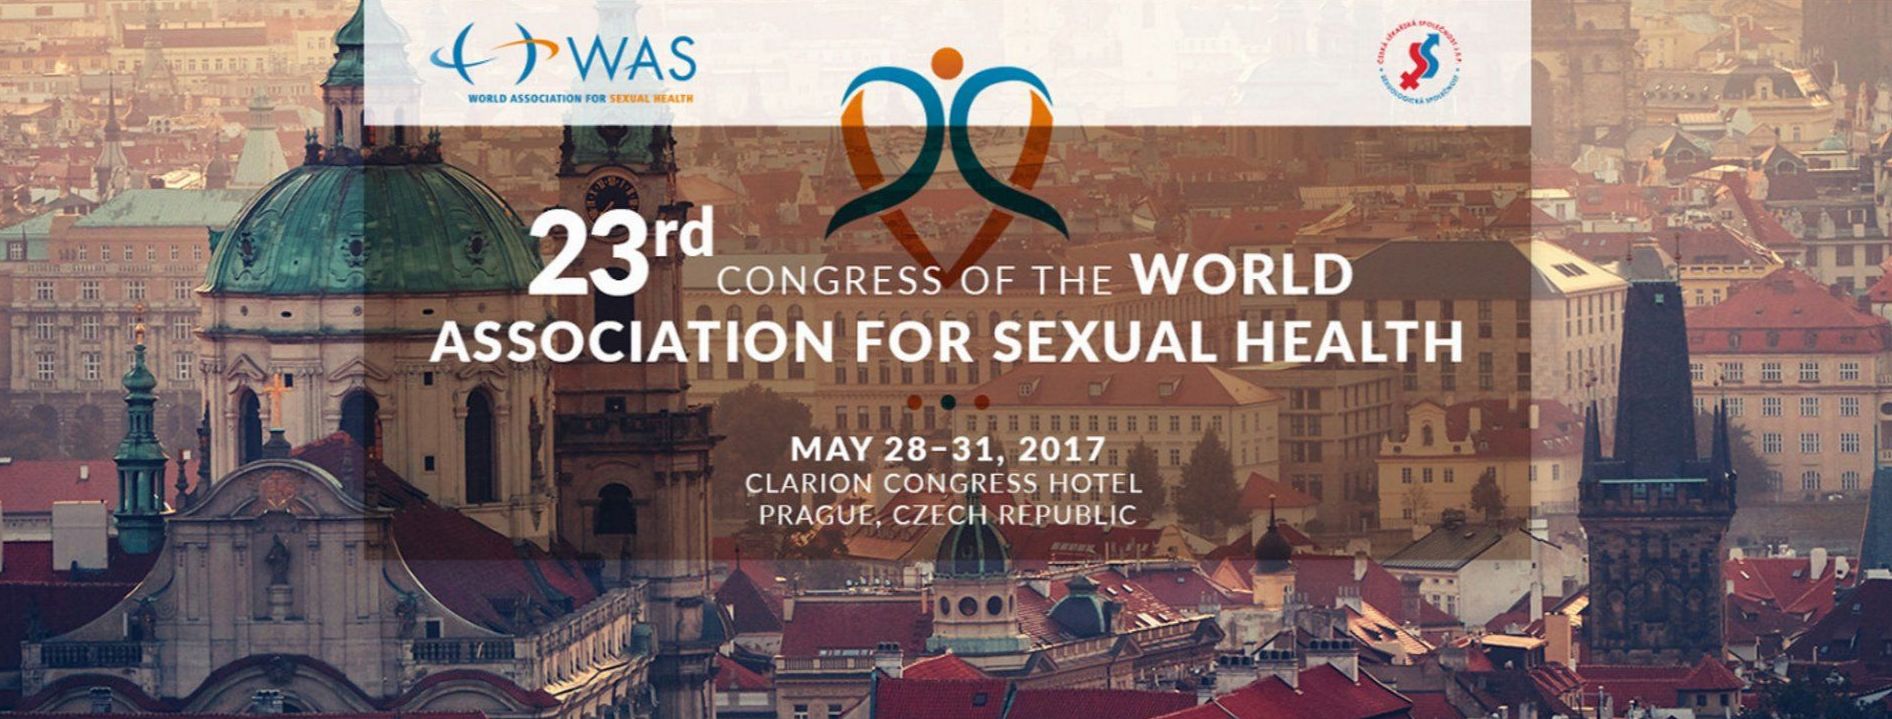 XXII Congreso Mundial de Sexualidad y salud mental en Praga